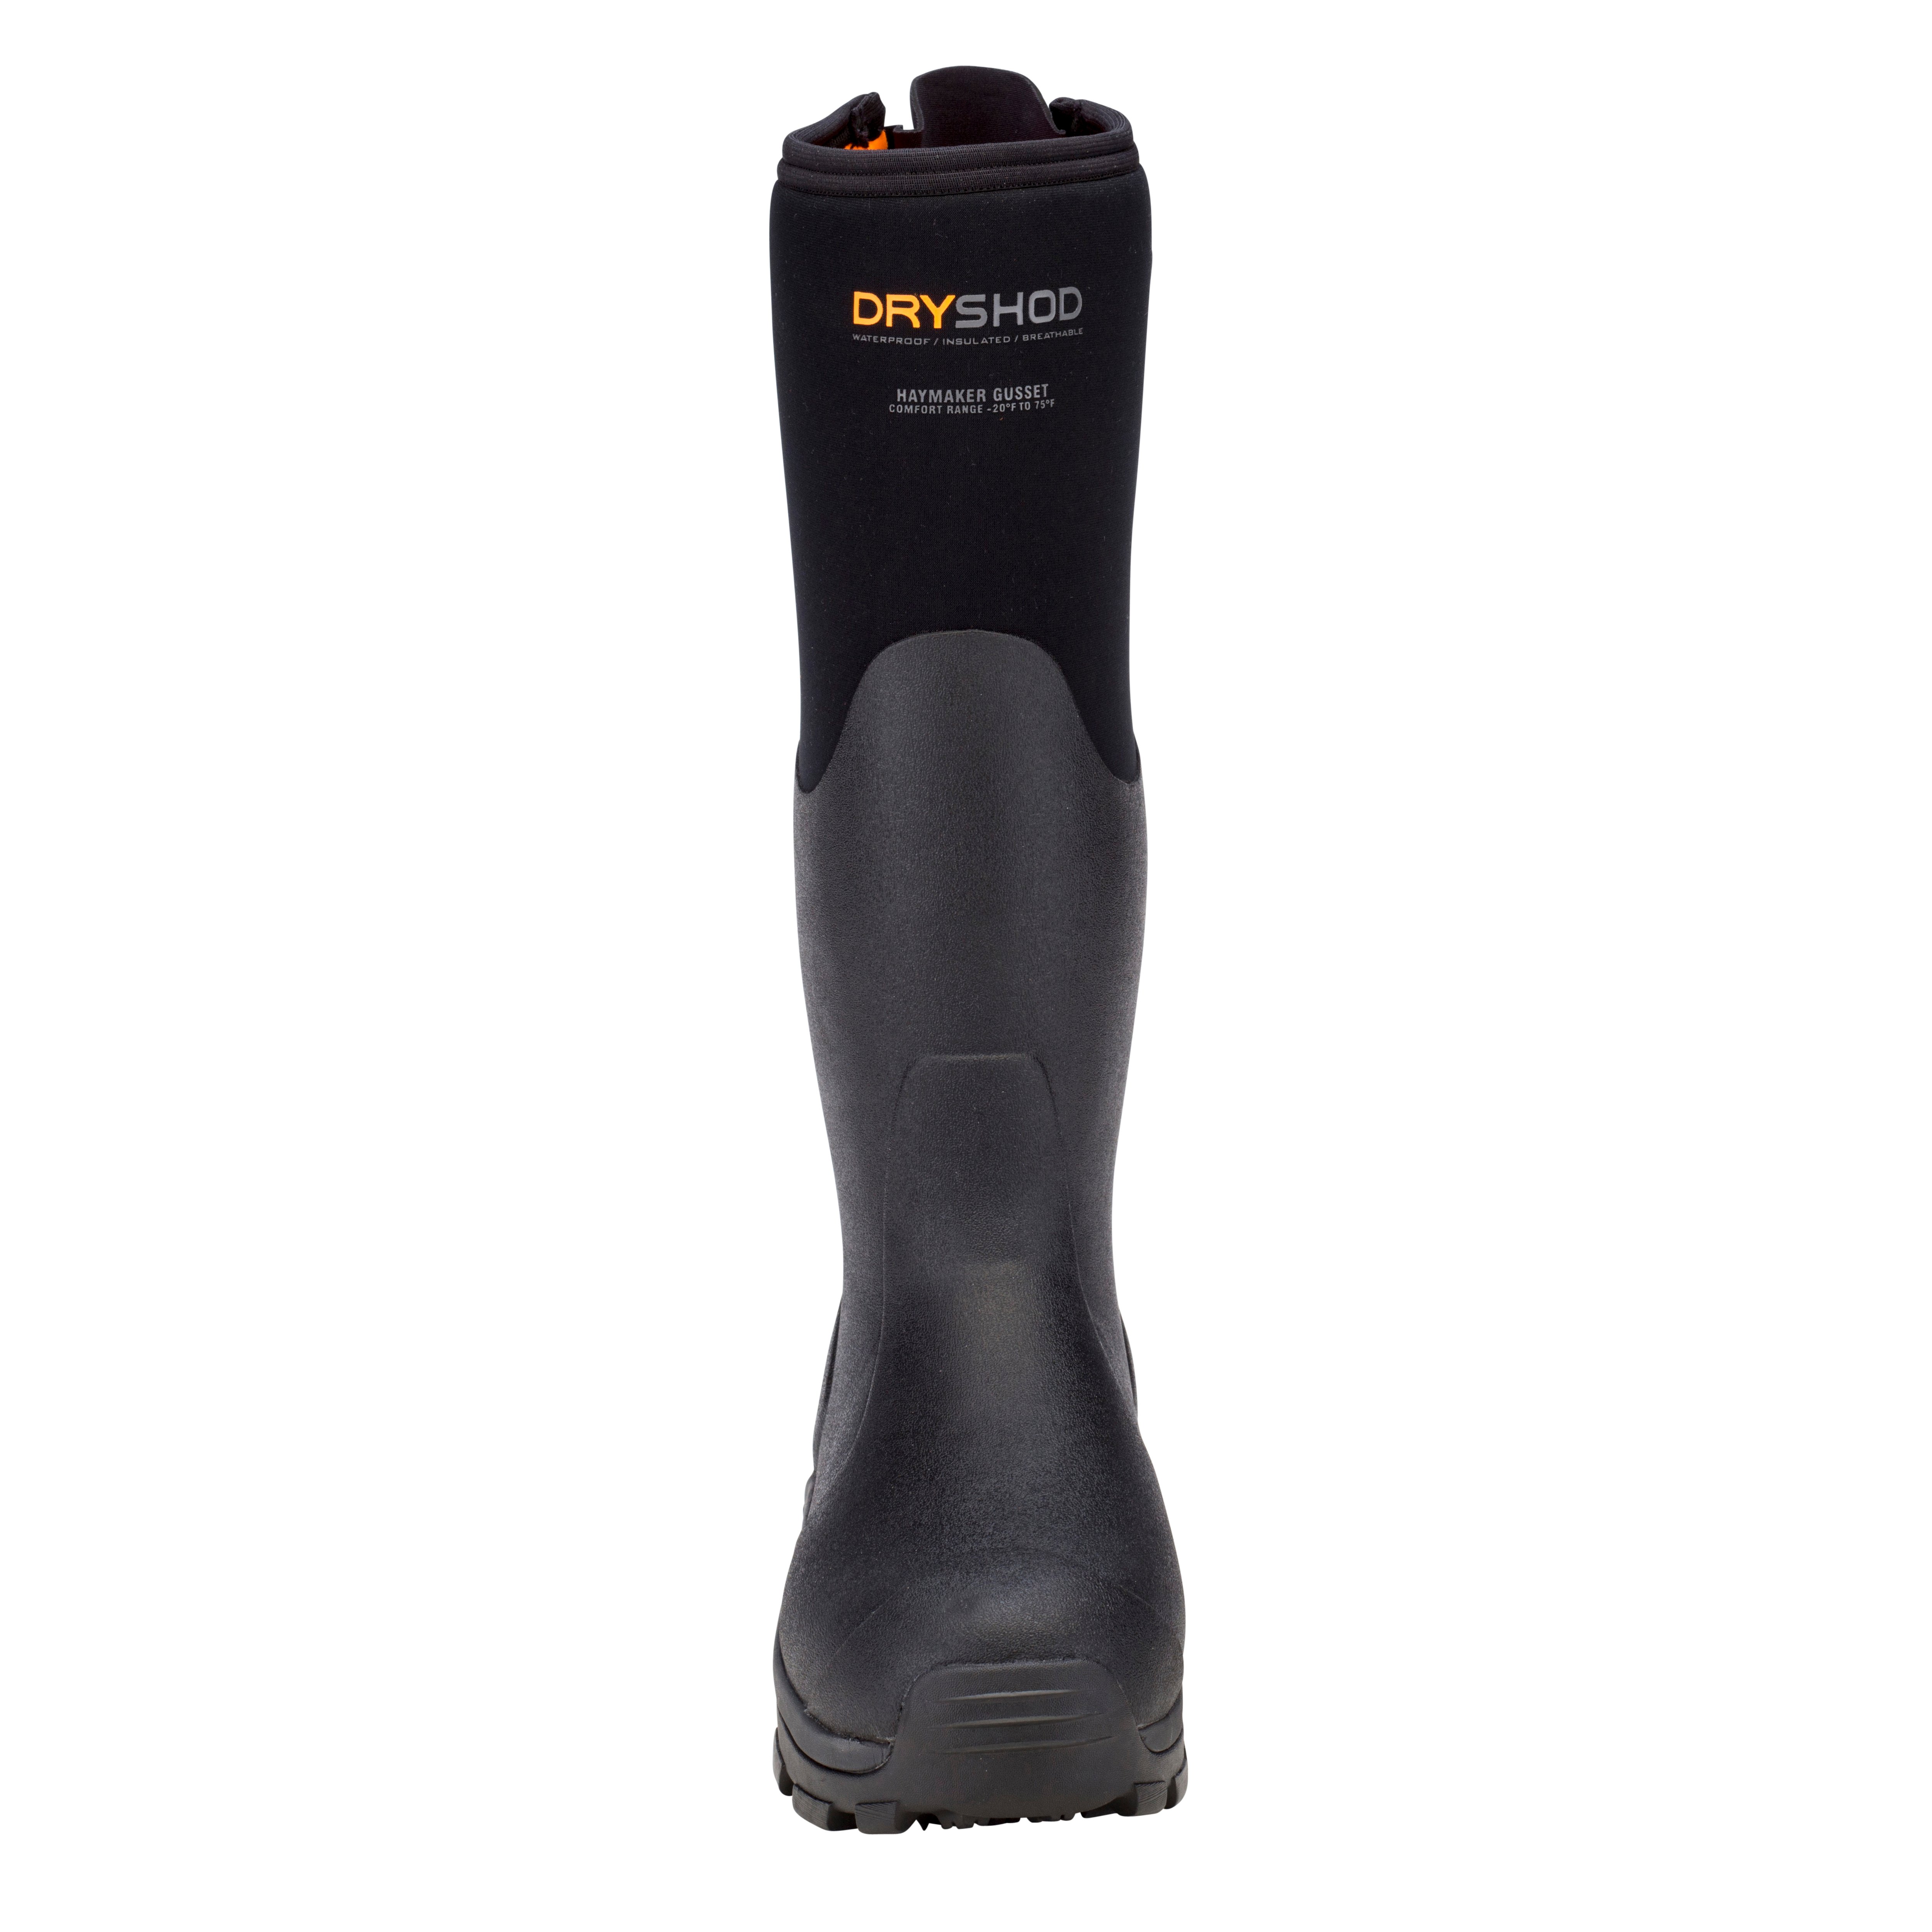 Haymaker Gusset – Dryshod Waterproof Boots